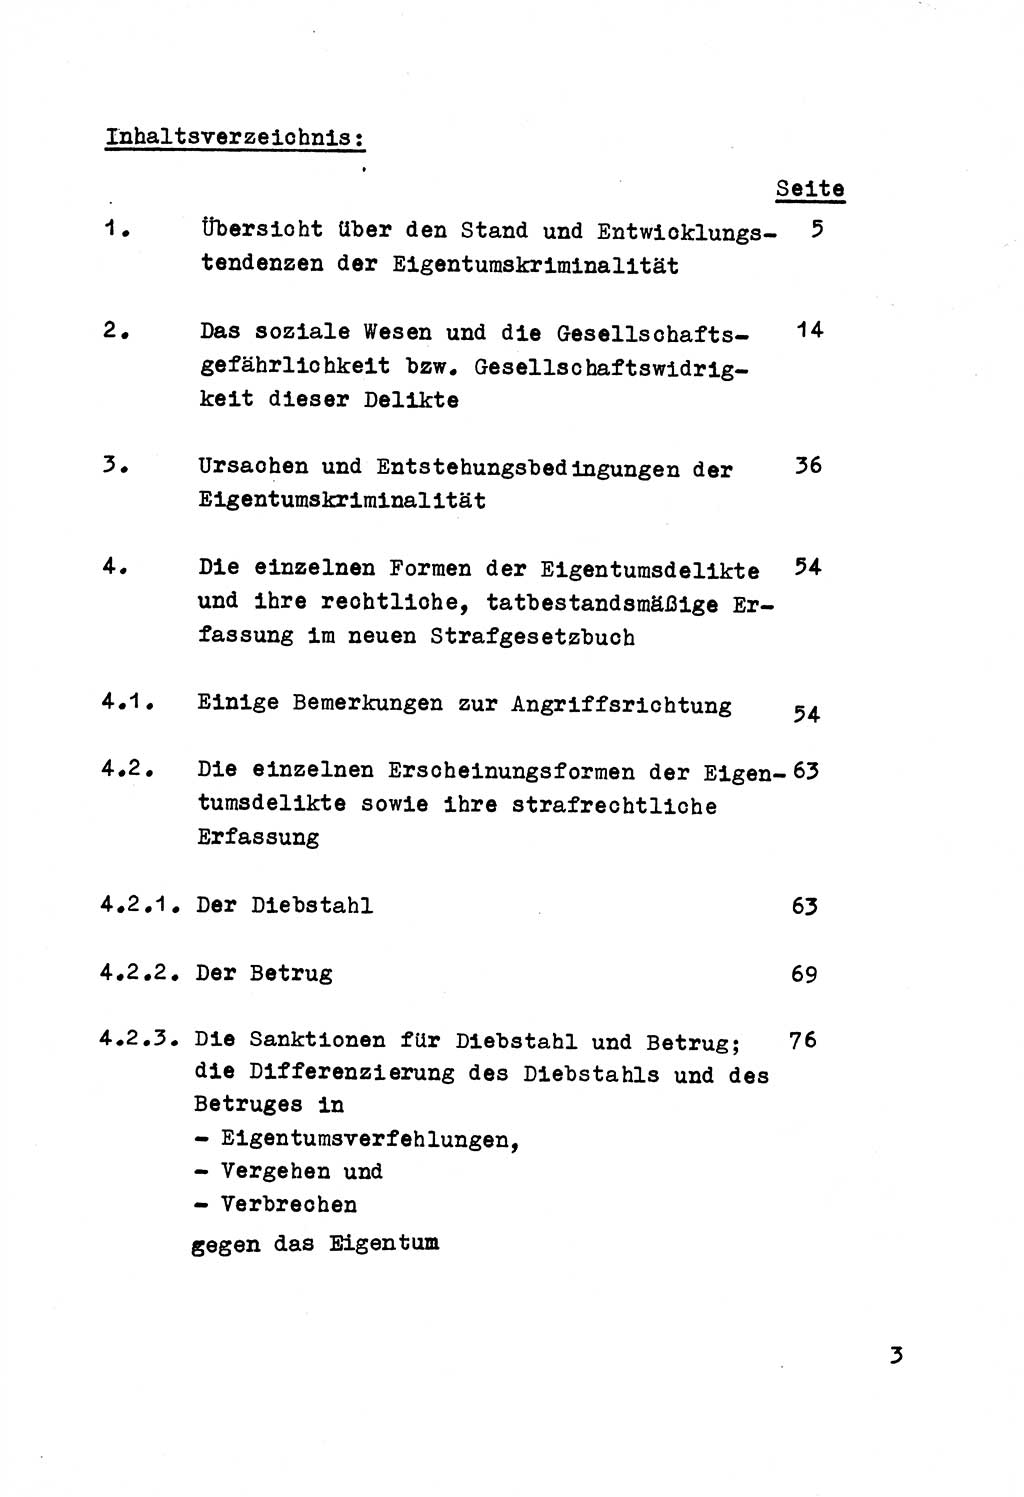 Strafrecht der DDR (Deutsche Demokratische Republik), Besonderer Teil, Lehrmaterial, Heft 5 1970, Seite 3 (Strafr. DDR BT Lehrmat. H. 5 1970, S. 3)